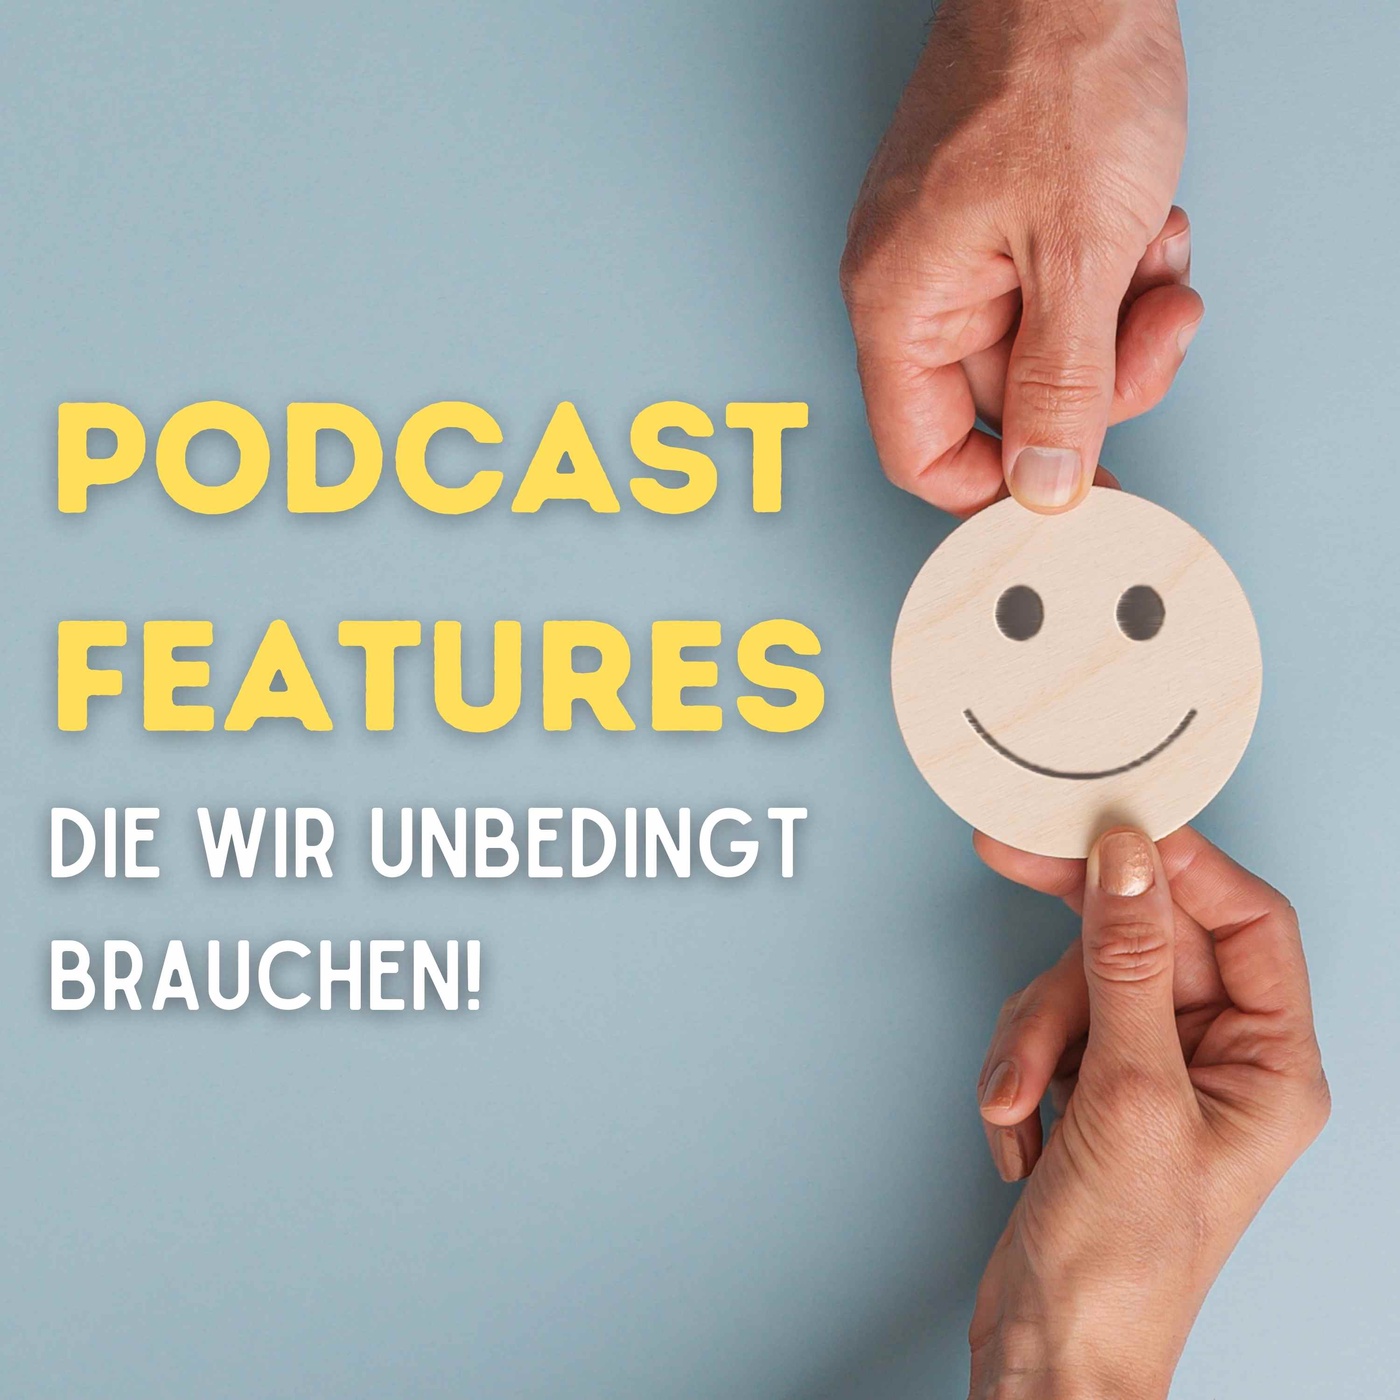 Podcast Features die wir unbedingt brauchen!